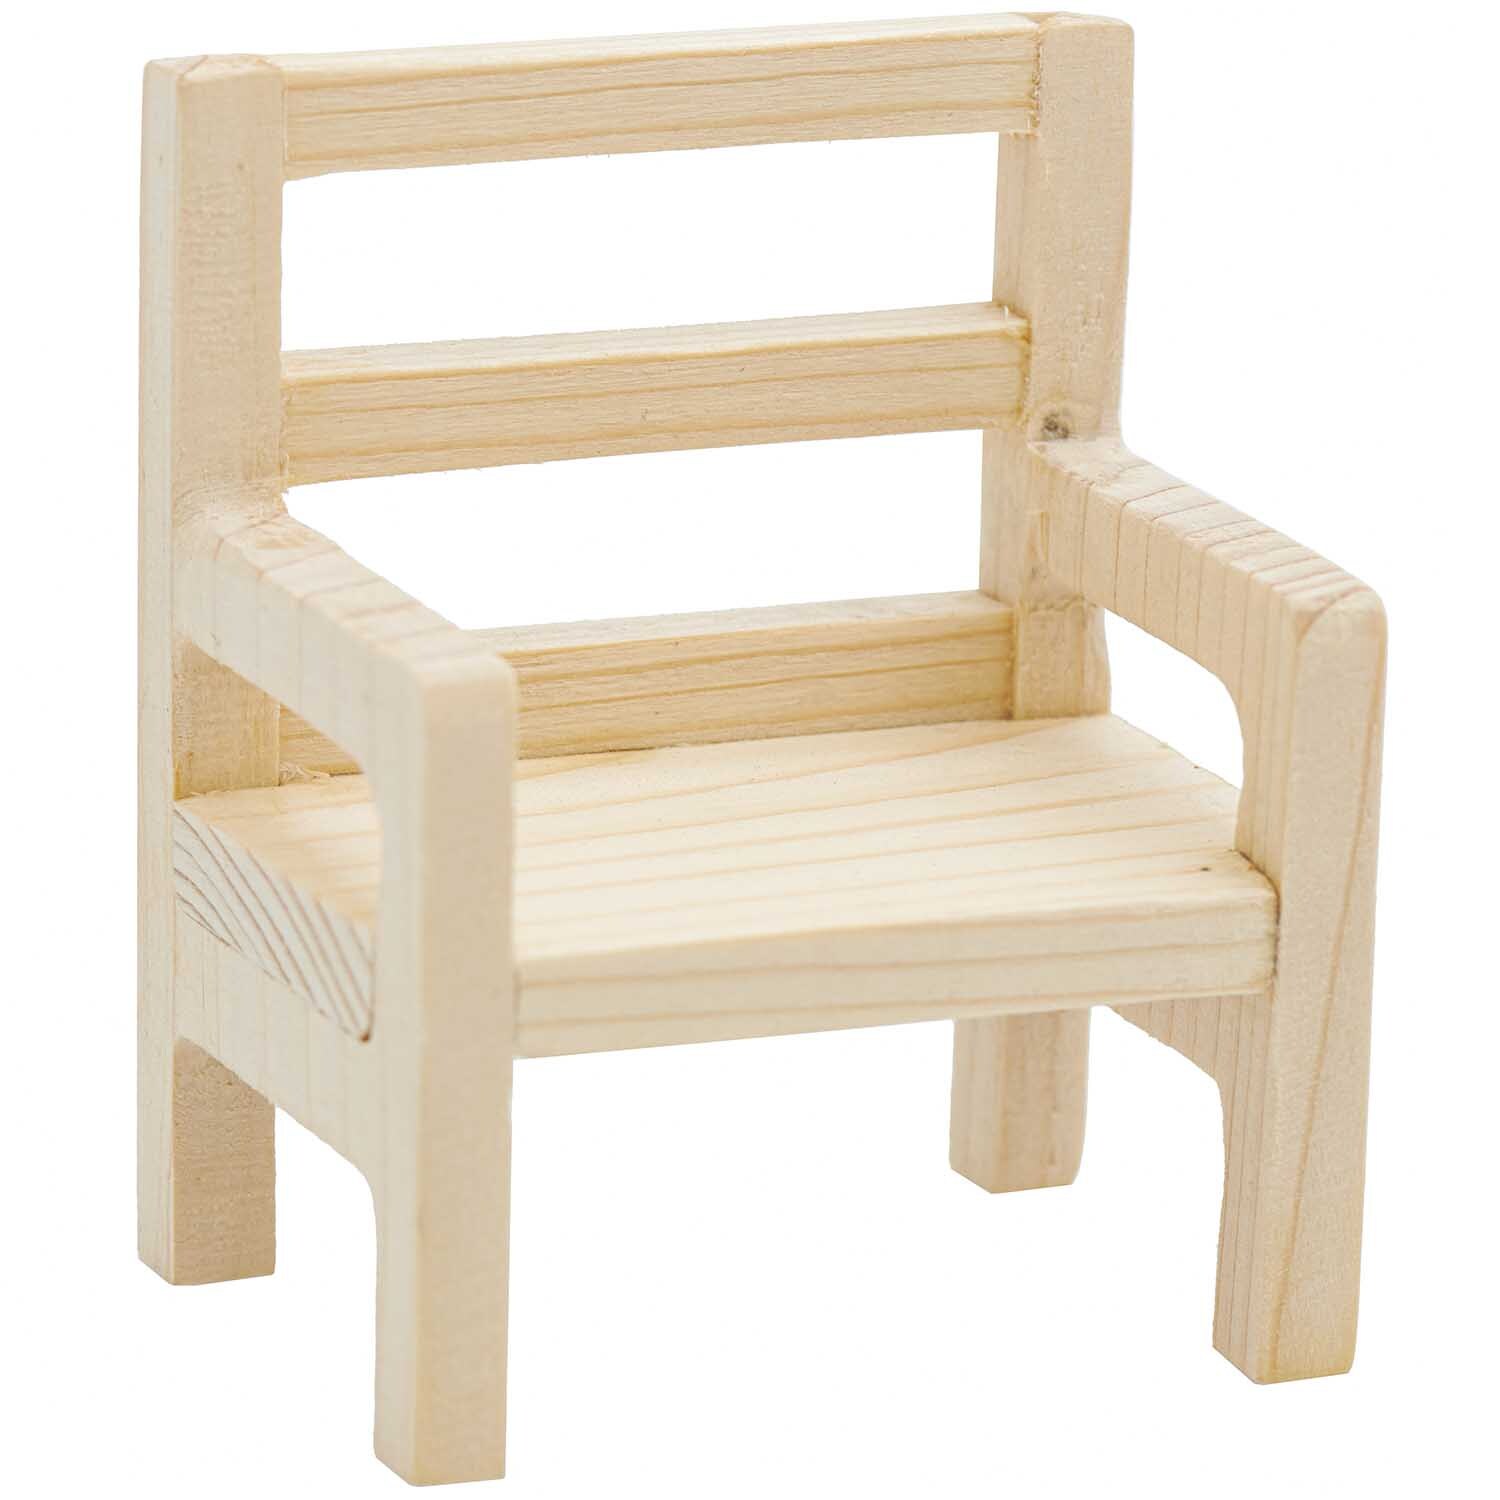 Miniatur Stuhl 4,5x6,5x8cm